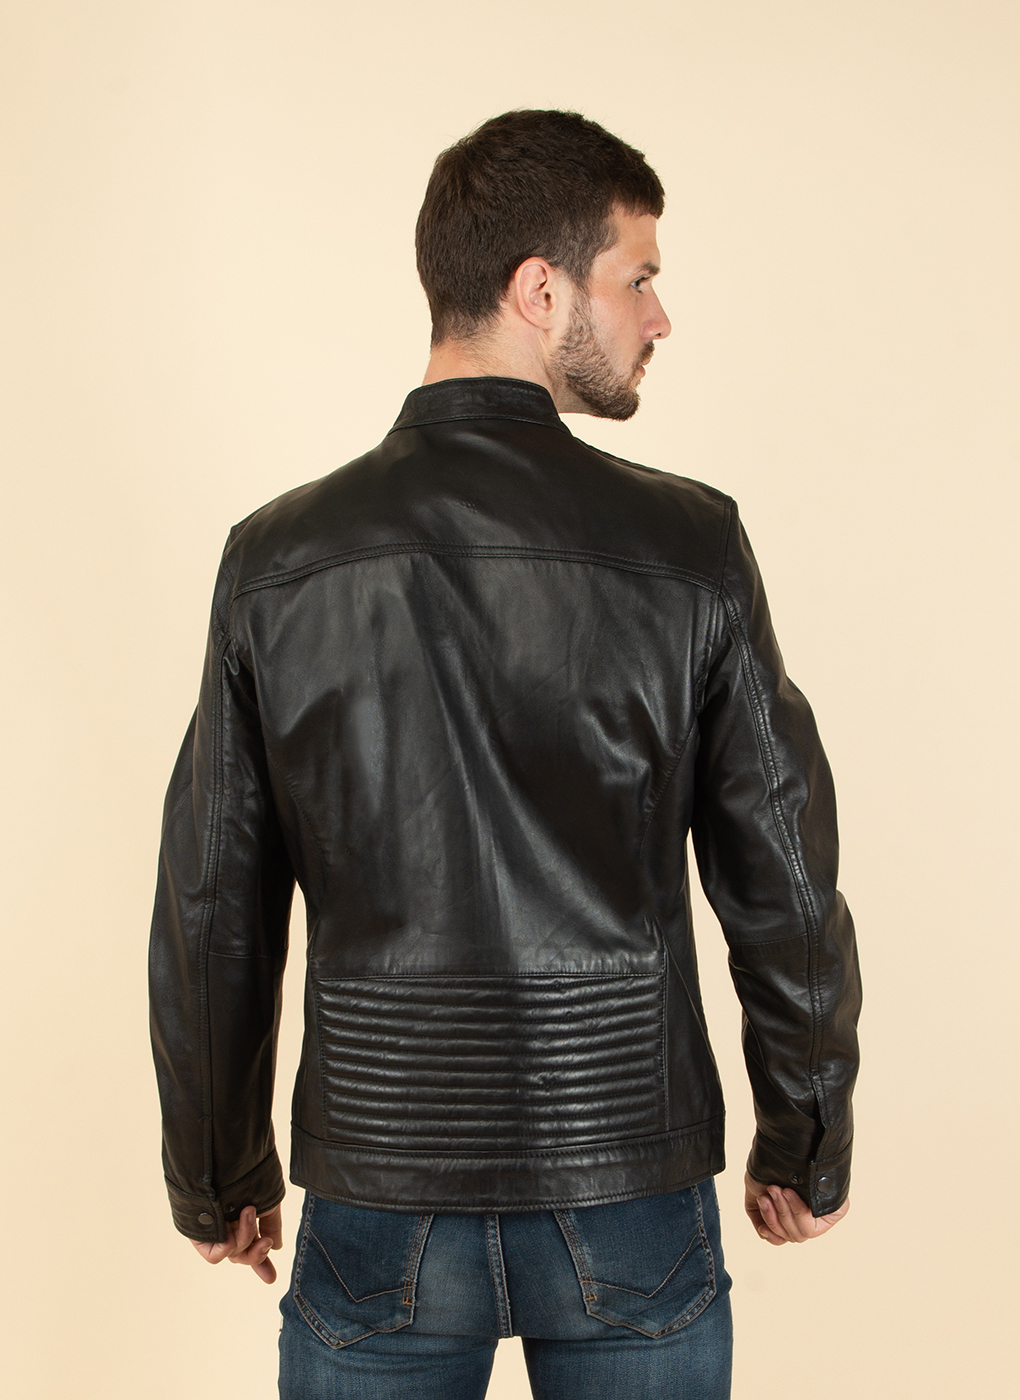 Кожаная куртка мужская Каляев 51788 черная 56 RU